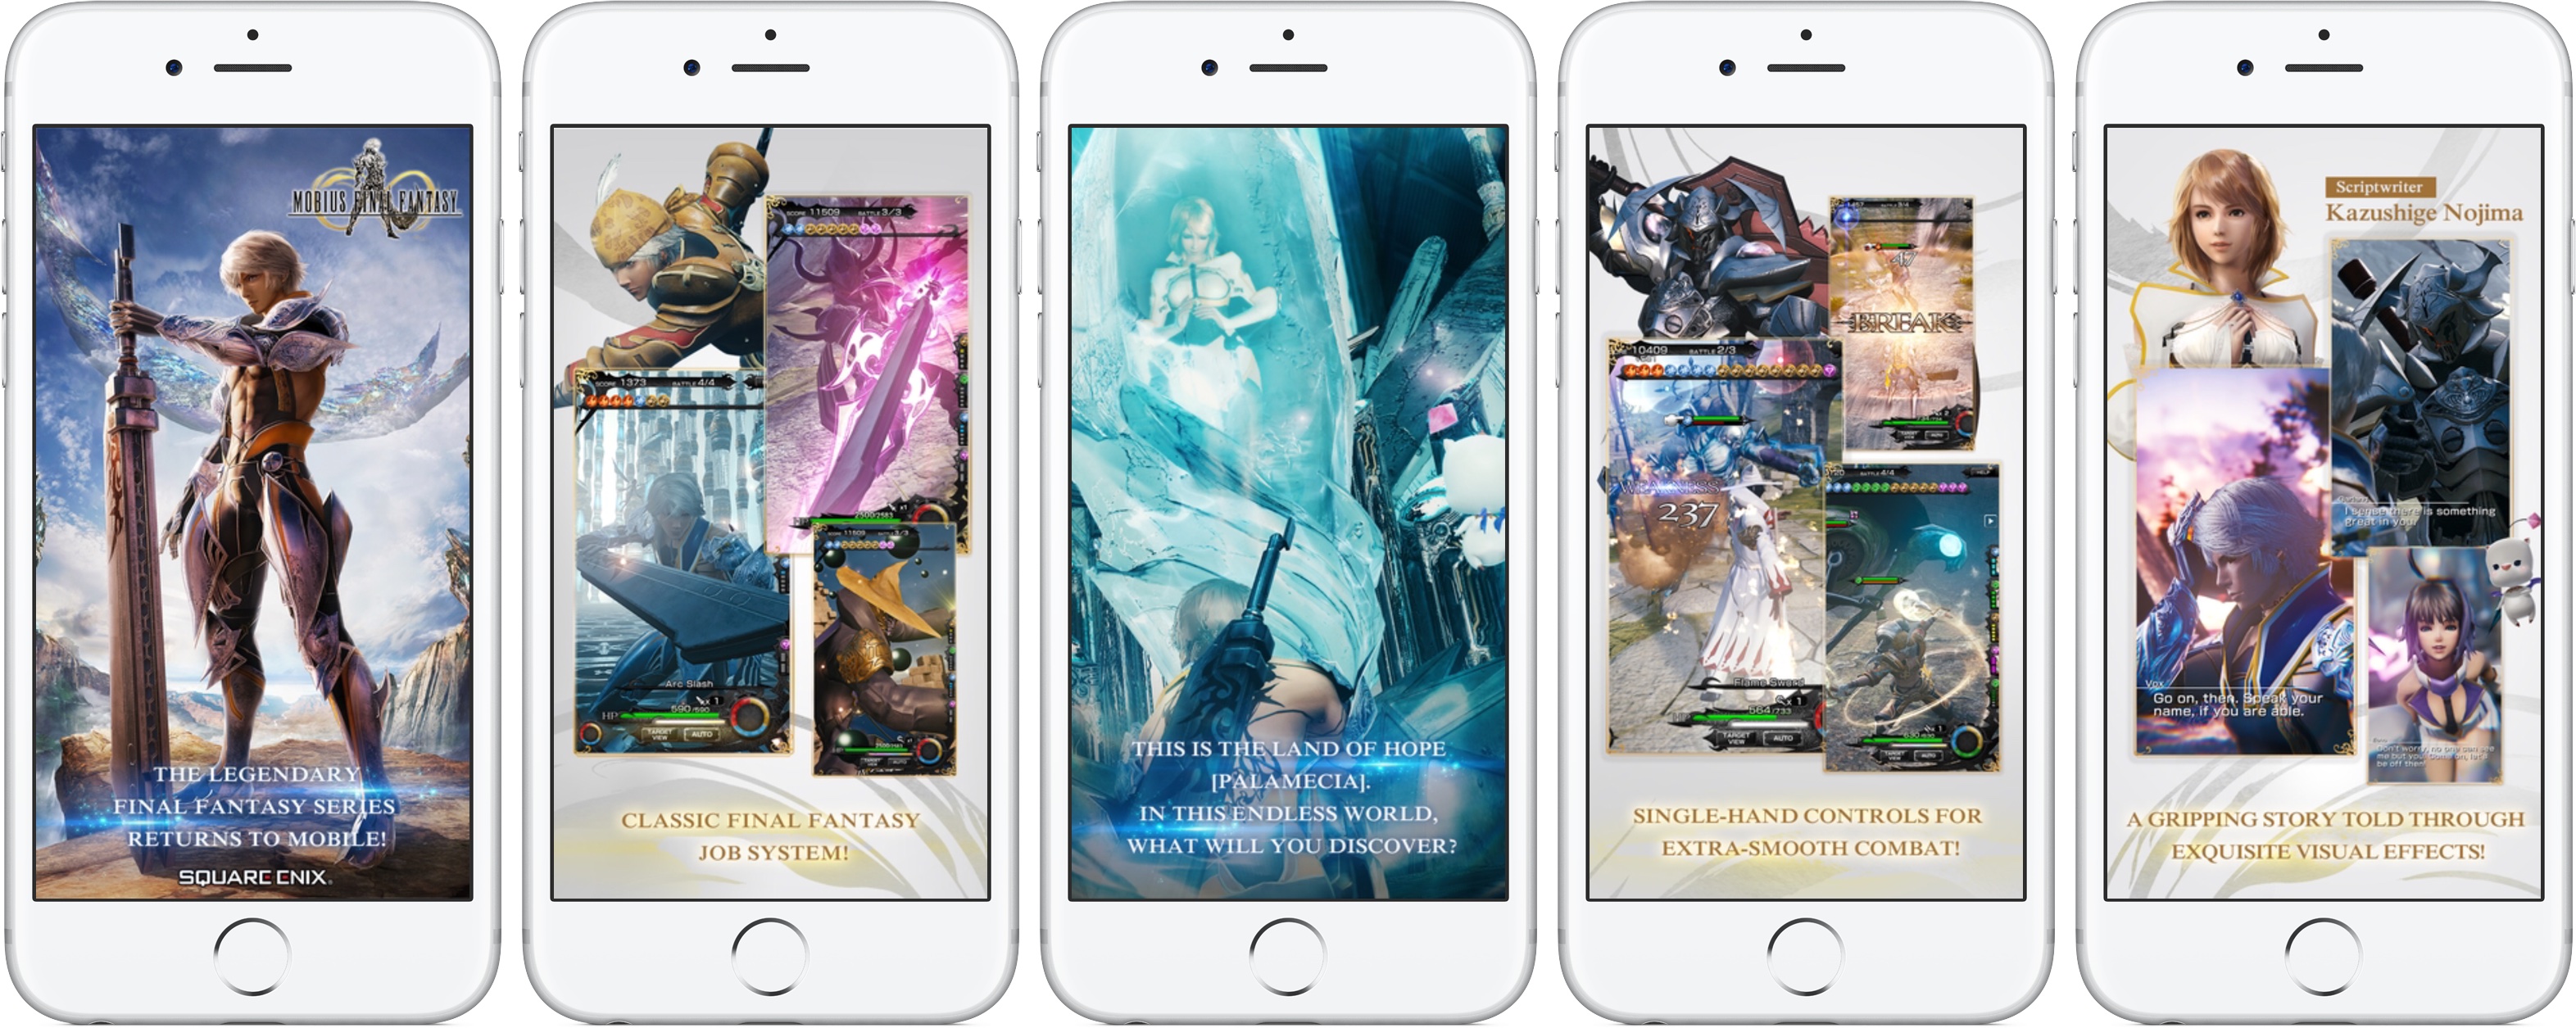 Mobius Final Fantasy iPhone screenshot 001